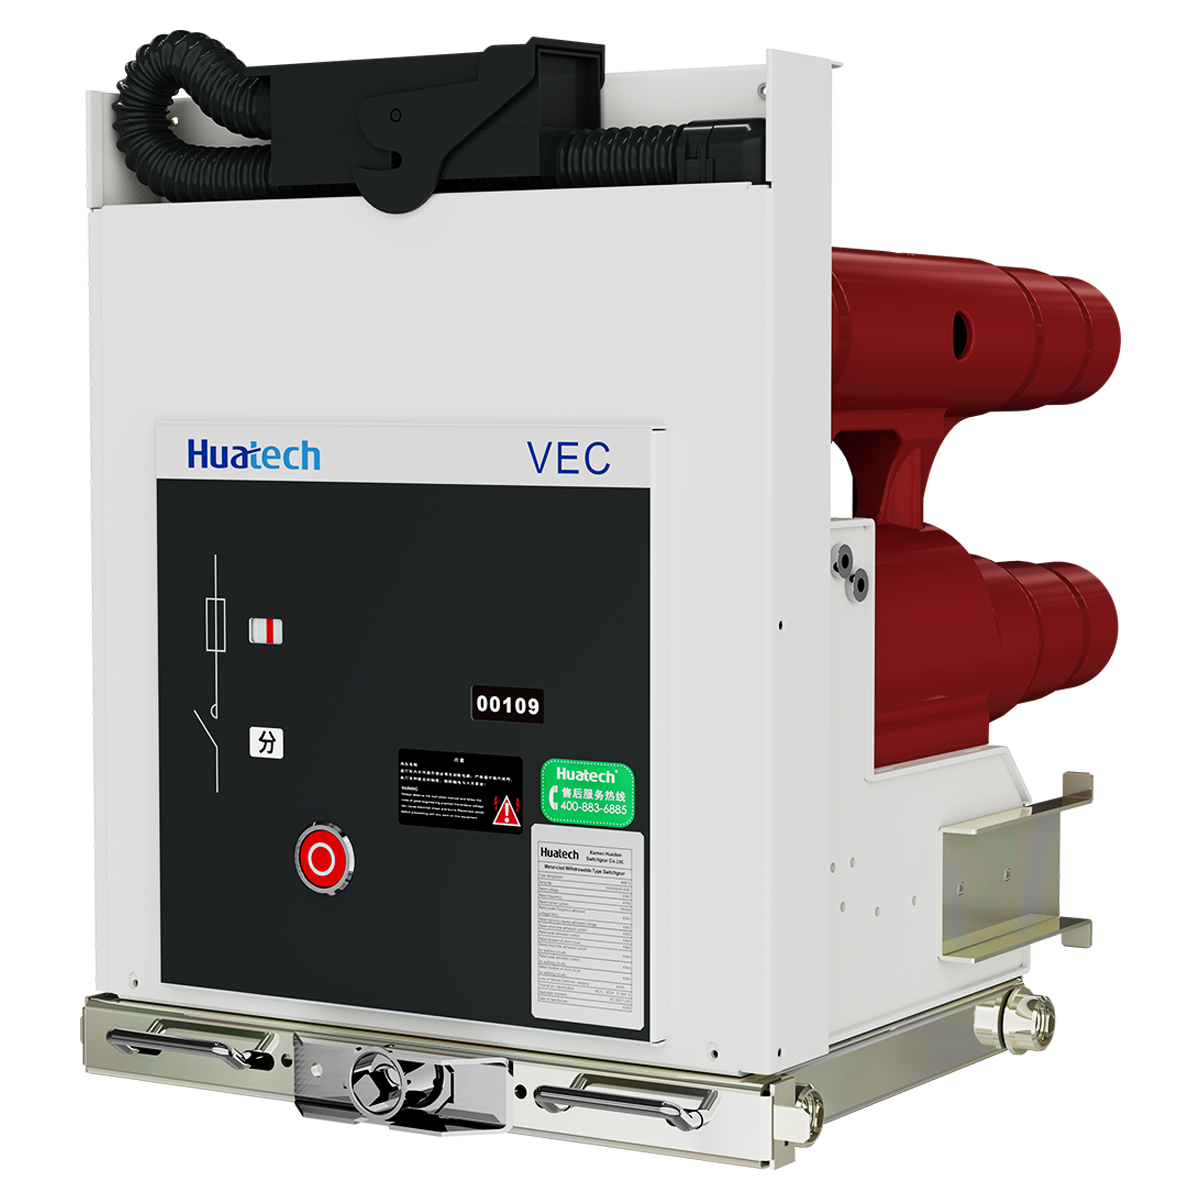 VEC Vacuum Contactor